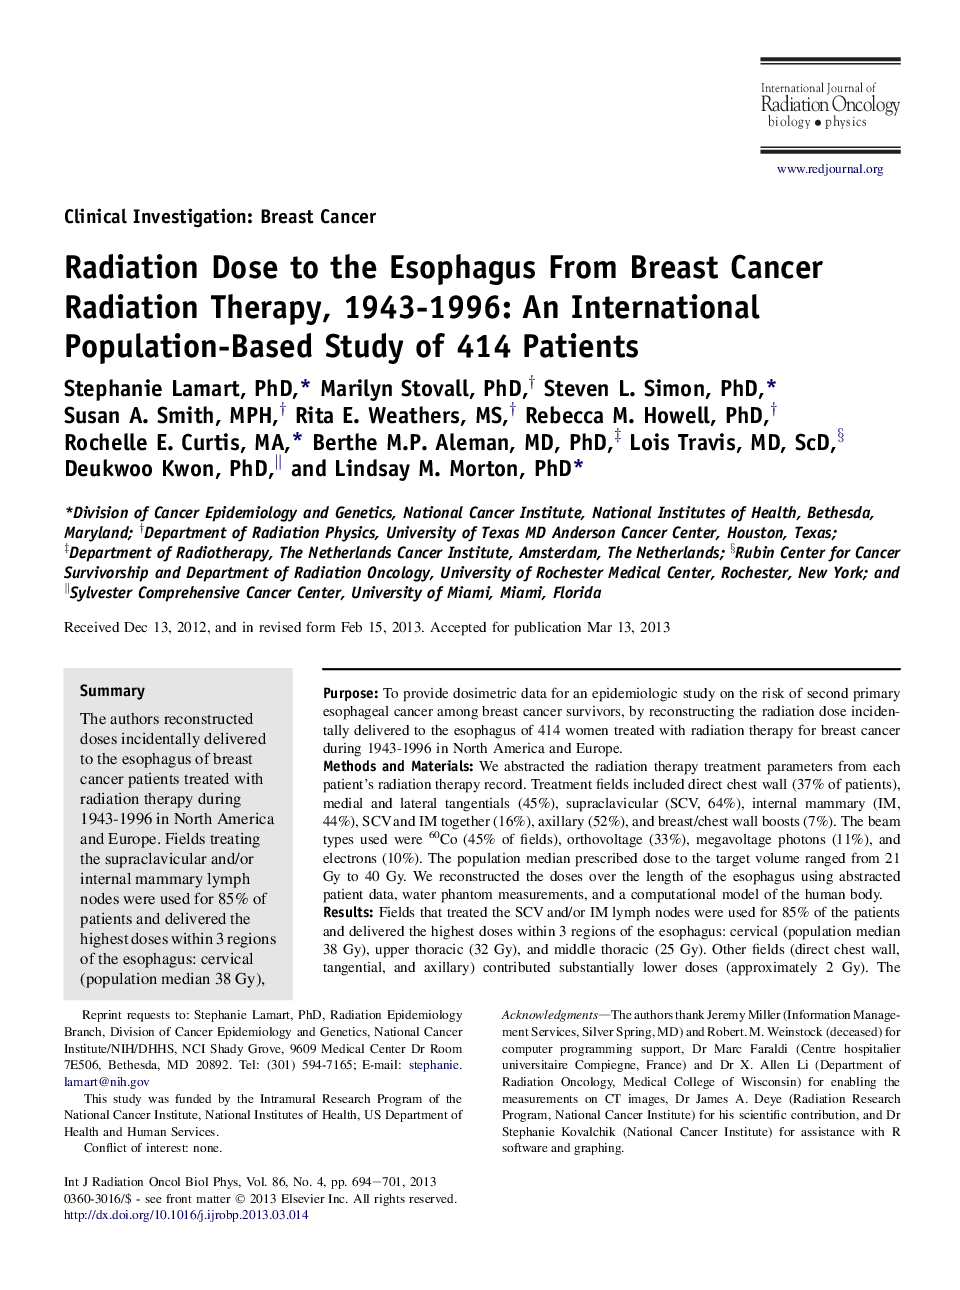 دوز تابشی به سرطان از رادیوتراپی سرطان پستان، سالهای 1943 تا 1996: مطالعه مبتنی بر جمعیت 414 بیمار 